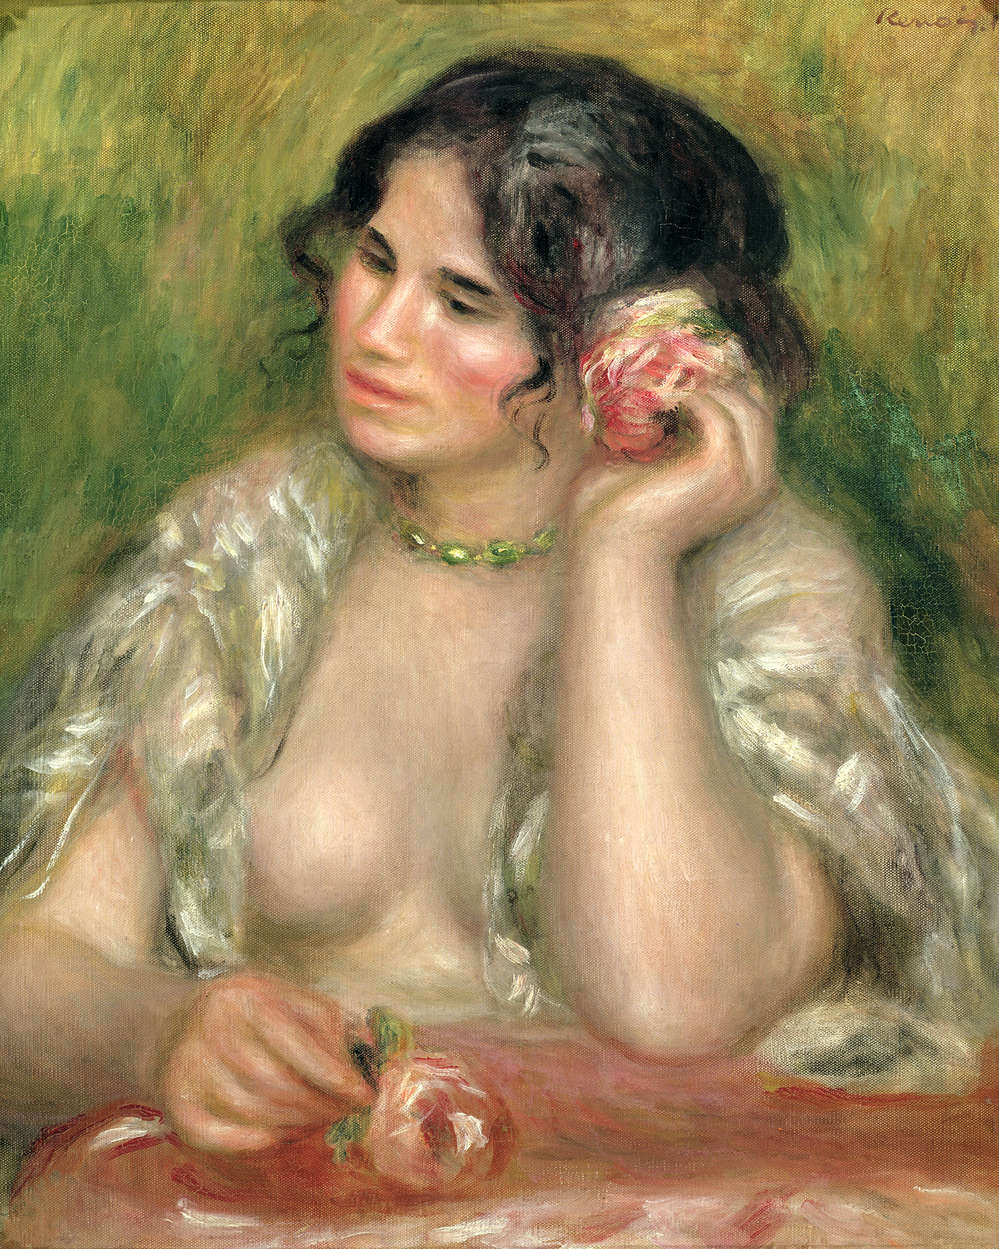             Fototapete "Gabrielle mit Rose" von Pierre Auguste Renoir
        